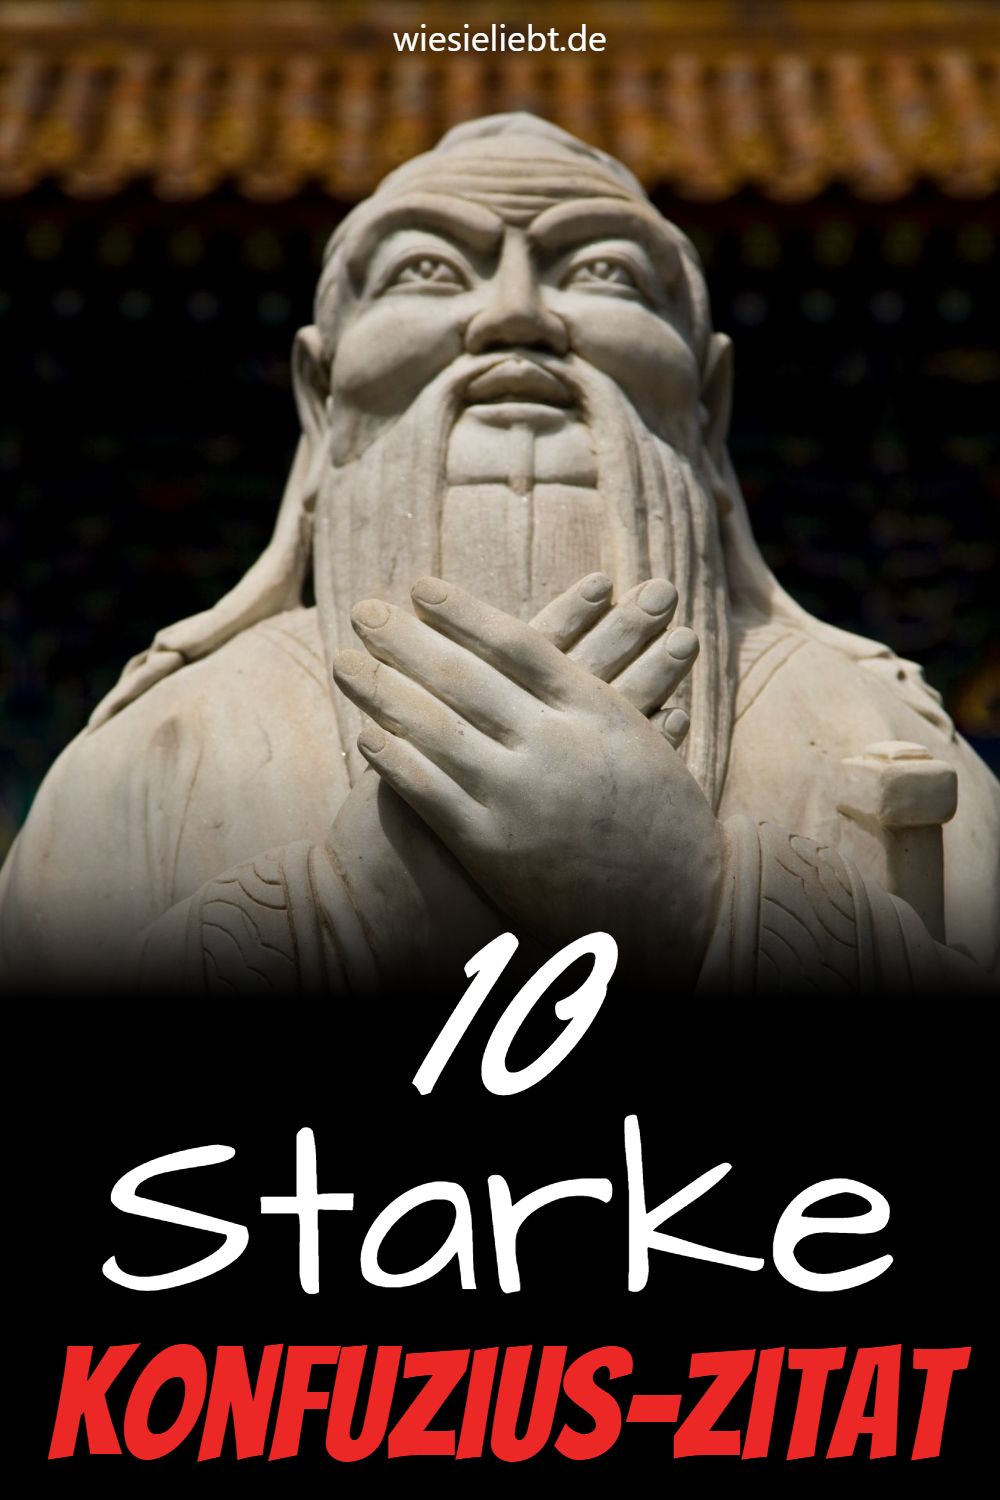 Konfuzius-Zitat 10 Starke